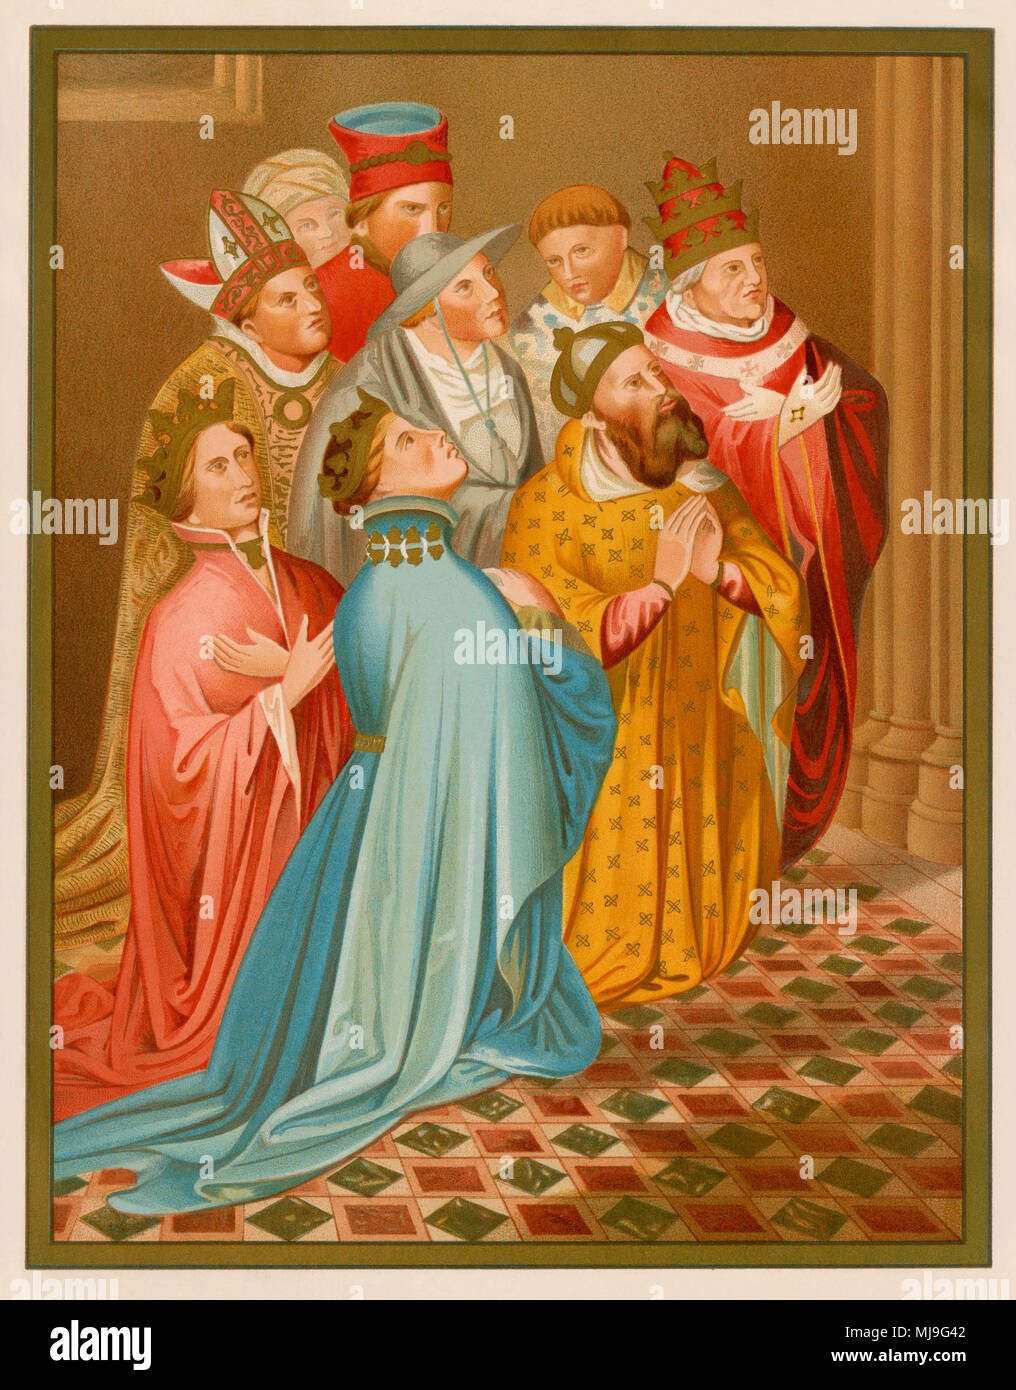 Ferdinand I d'Aragon avec la reine Aliénor d'Alburquerque, empereur Sigismond, et le Pape Martin V. Lithographie de Carderera's 'Iconografia Espanola' Banque D'Images